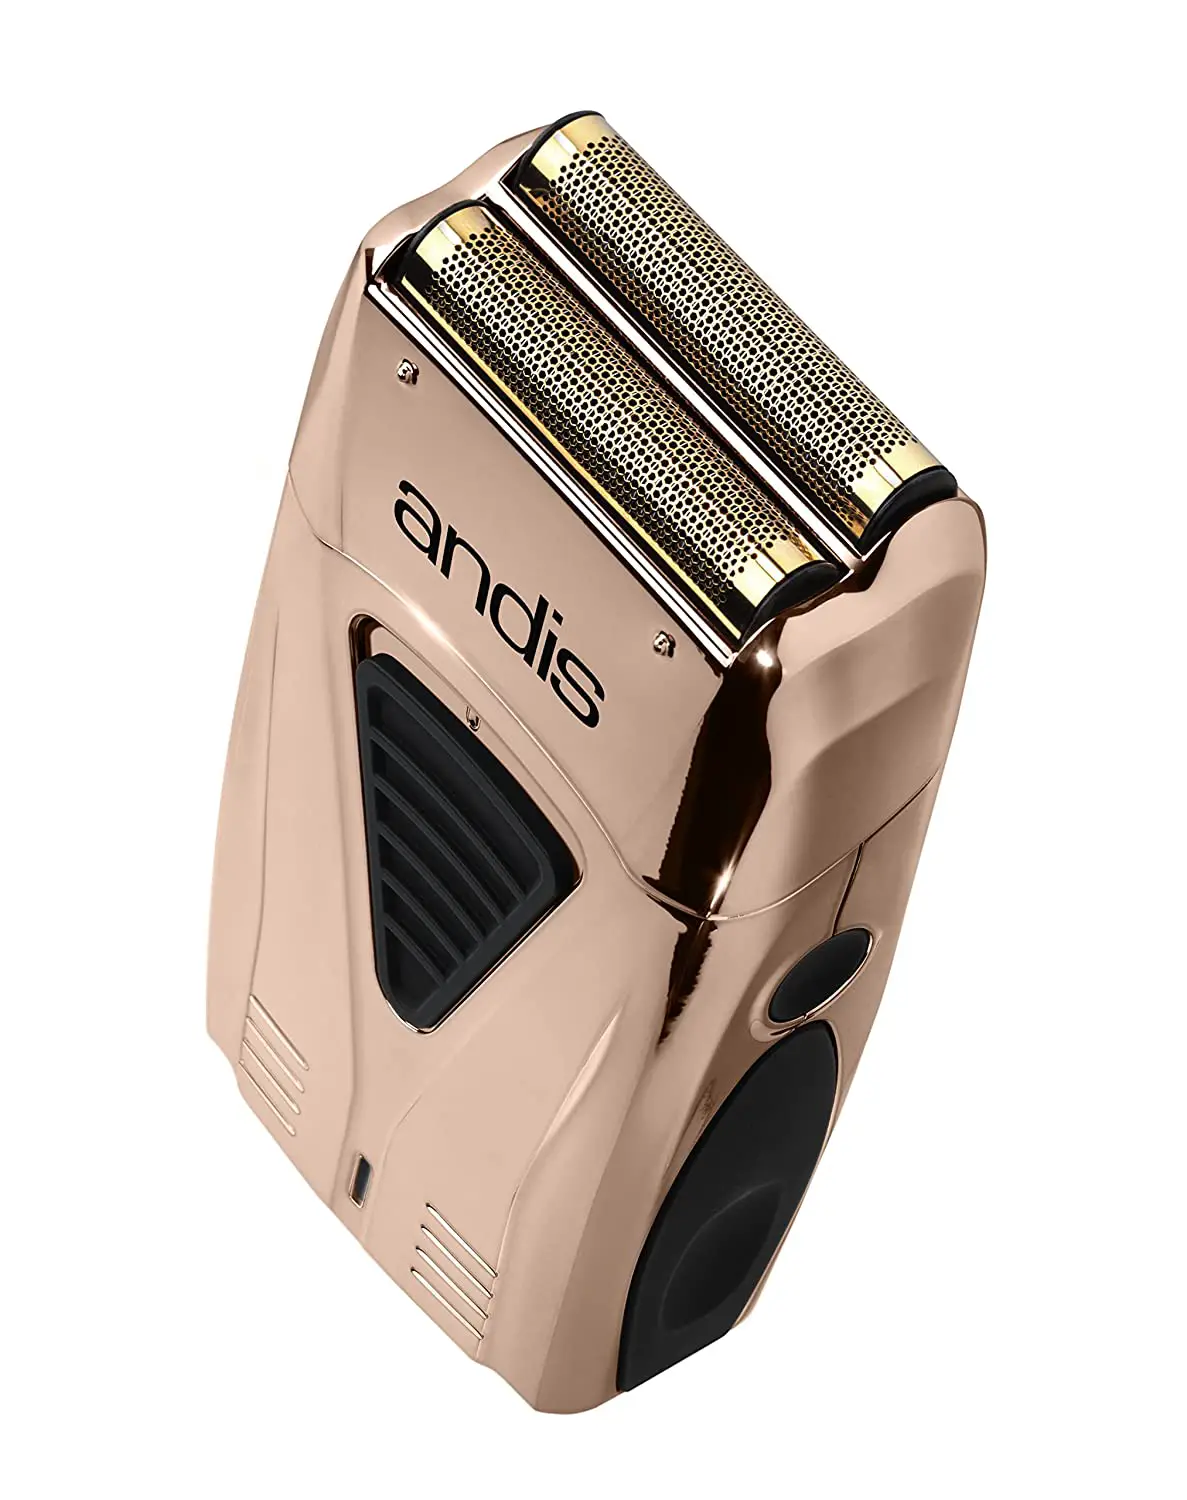 Andis 17220 Pro Foil Lithium Plus Titanium Foil Shaver, Cord:Cordless, Copper best bump free electric shaver